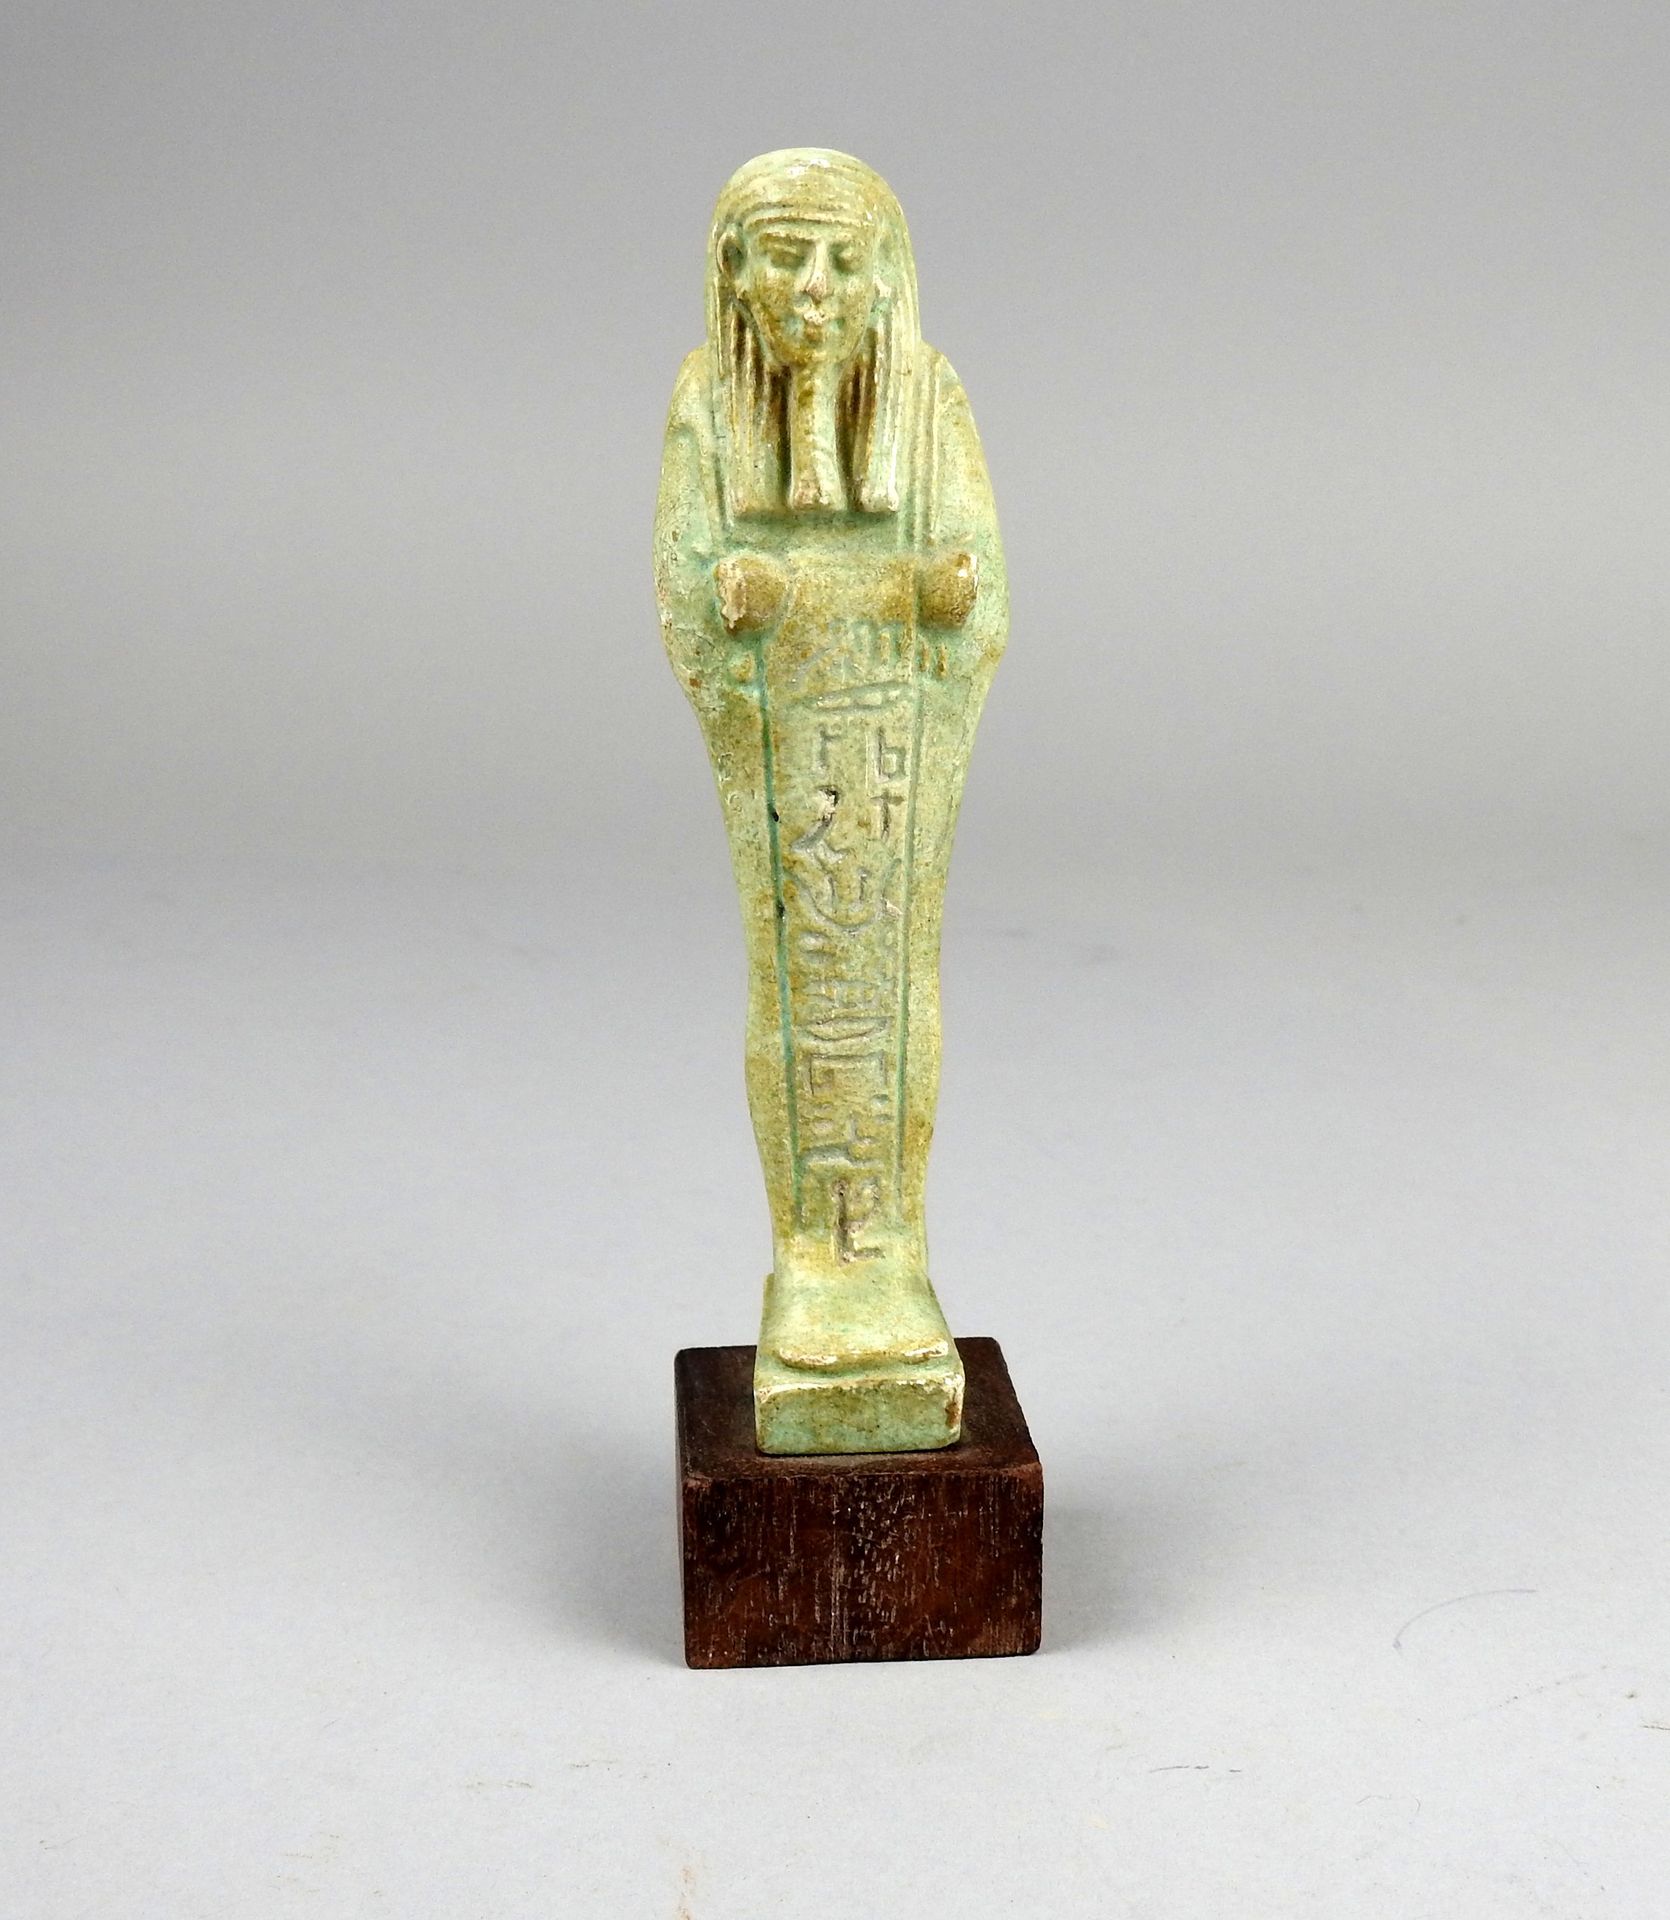 Null 铭刻在带有农具的柱子上的Oushepti

淡绿色搪瓷熔块12厘米

埃及晚期二十六至三十王朝